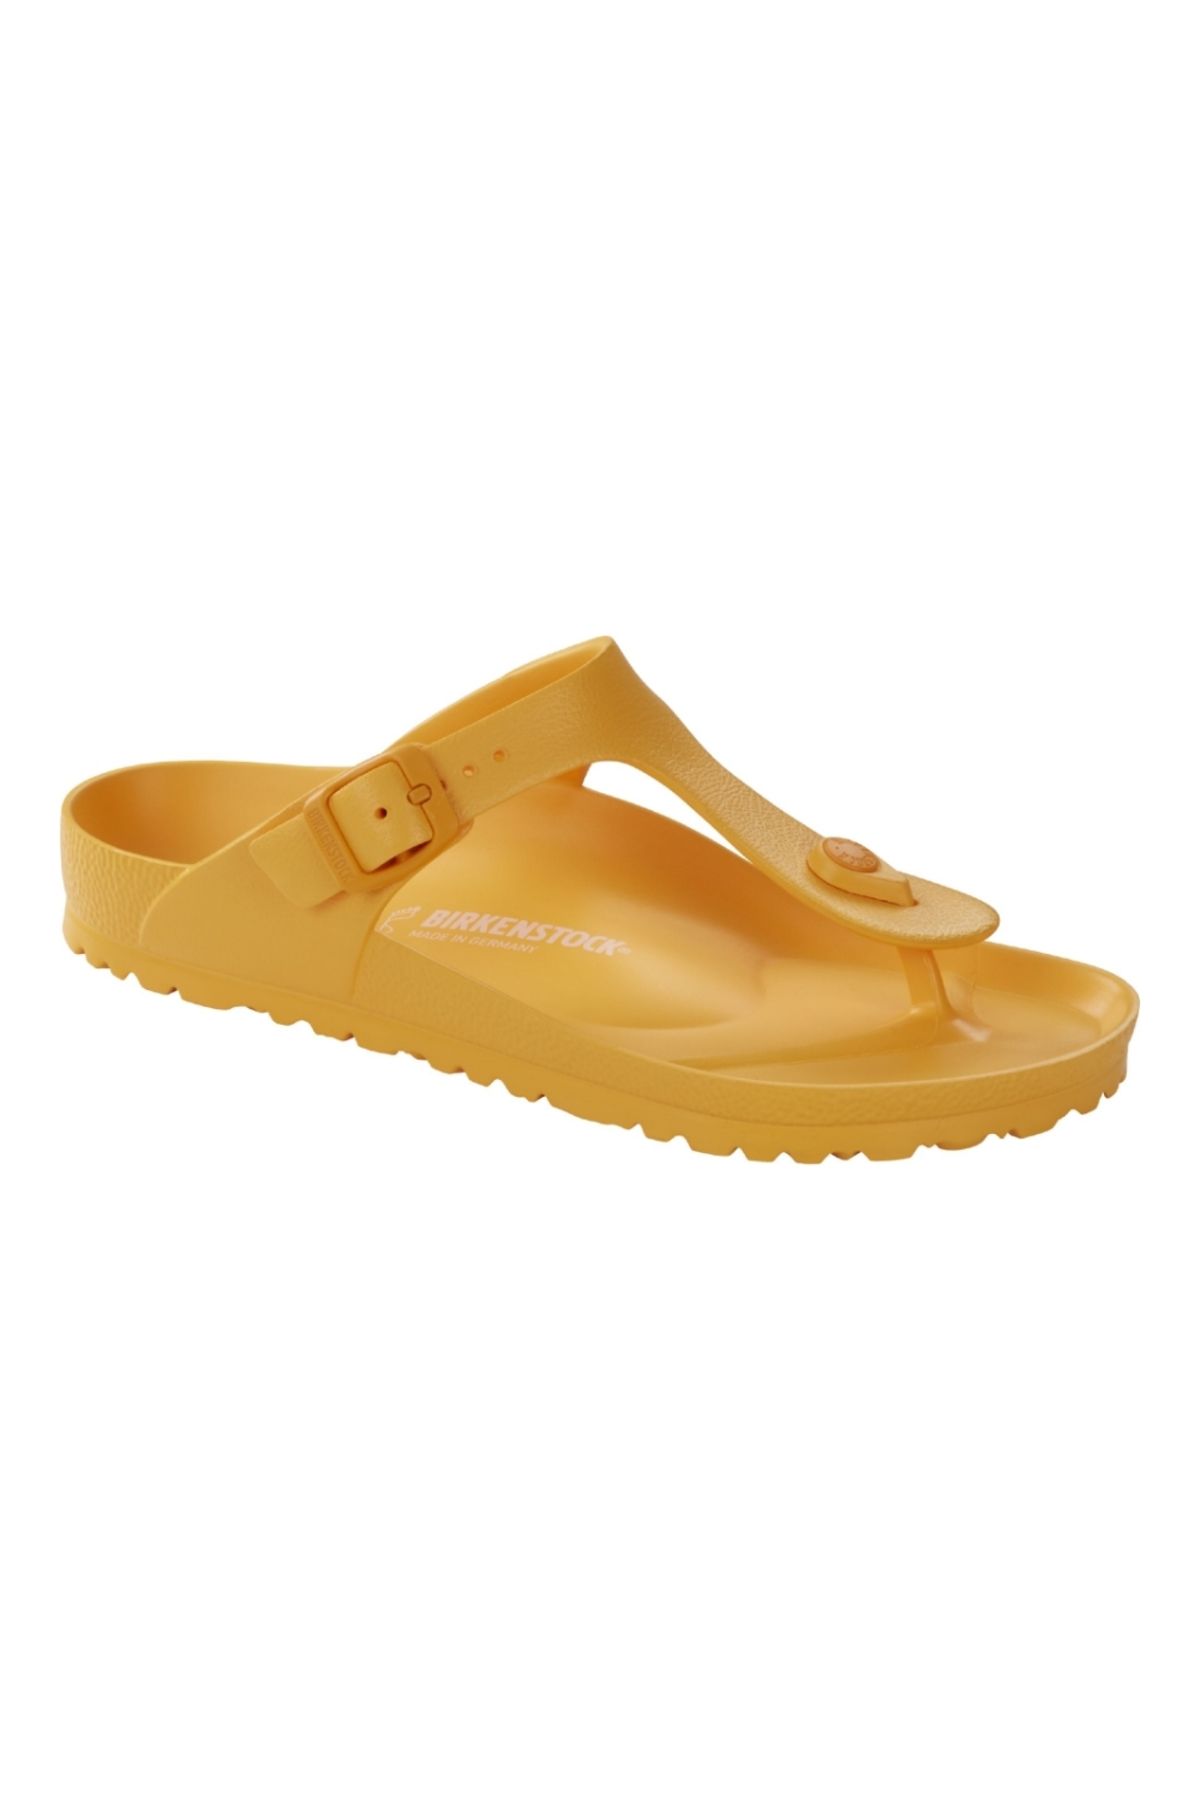 Birkenstock Kadın Zinnia Kadın Terlik/sandalet 1015473-zinnia